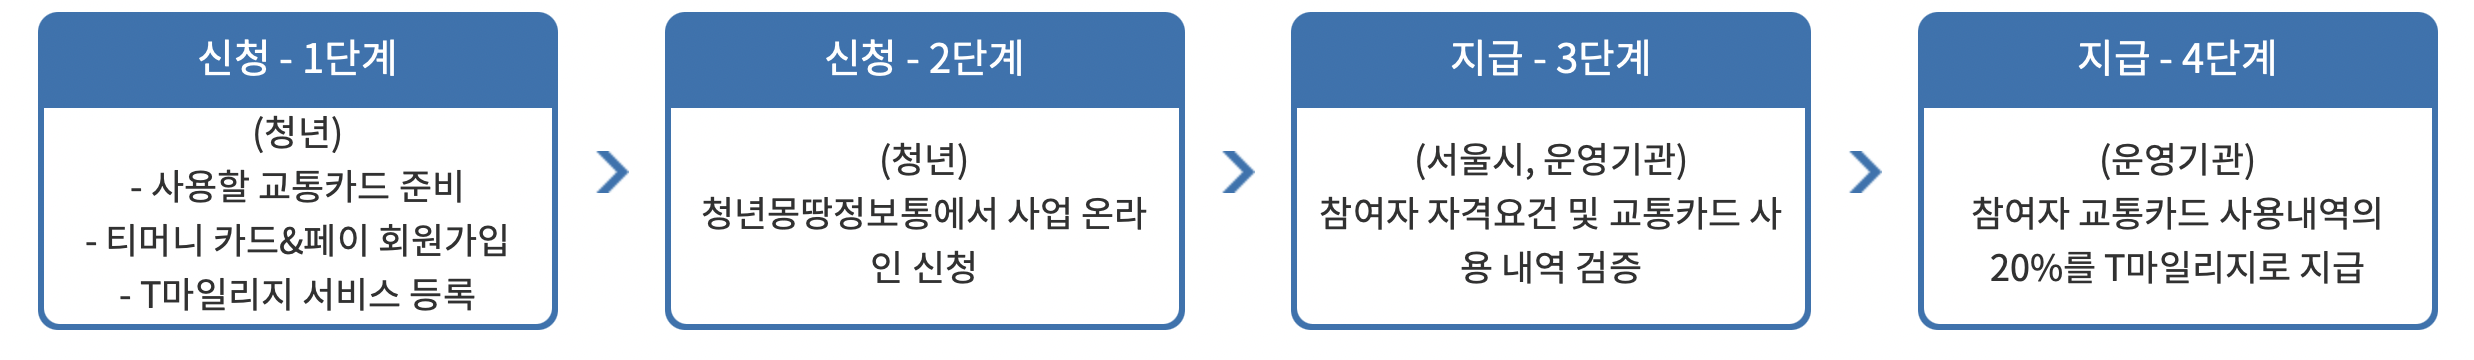 서울 청년 대중교통비 지원사업 신청 절차